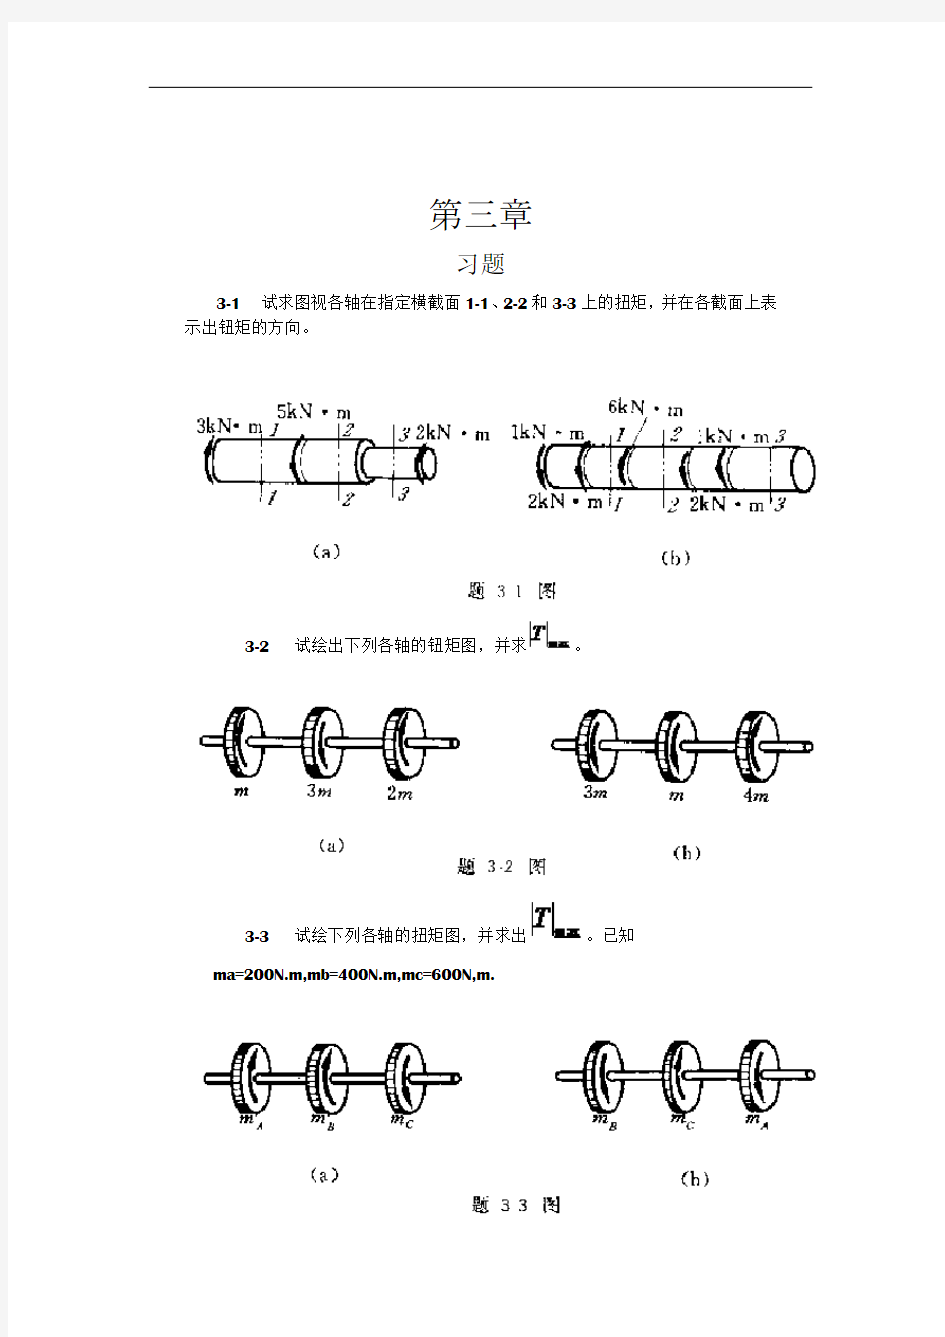 工程力学--材料力学(北京科大、东北大学版)第4版第三章习题答案